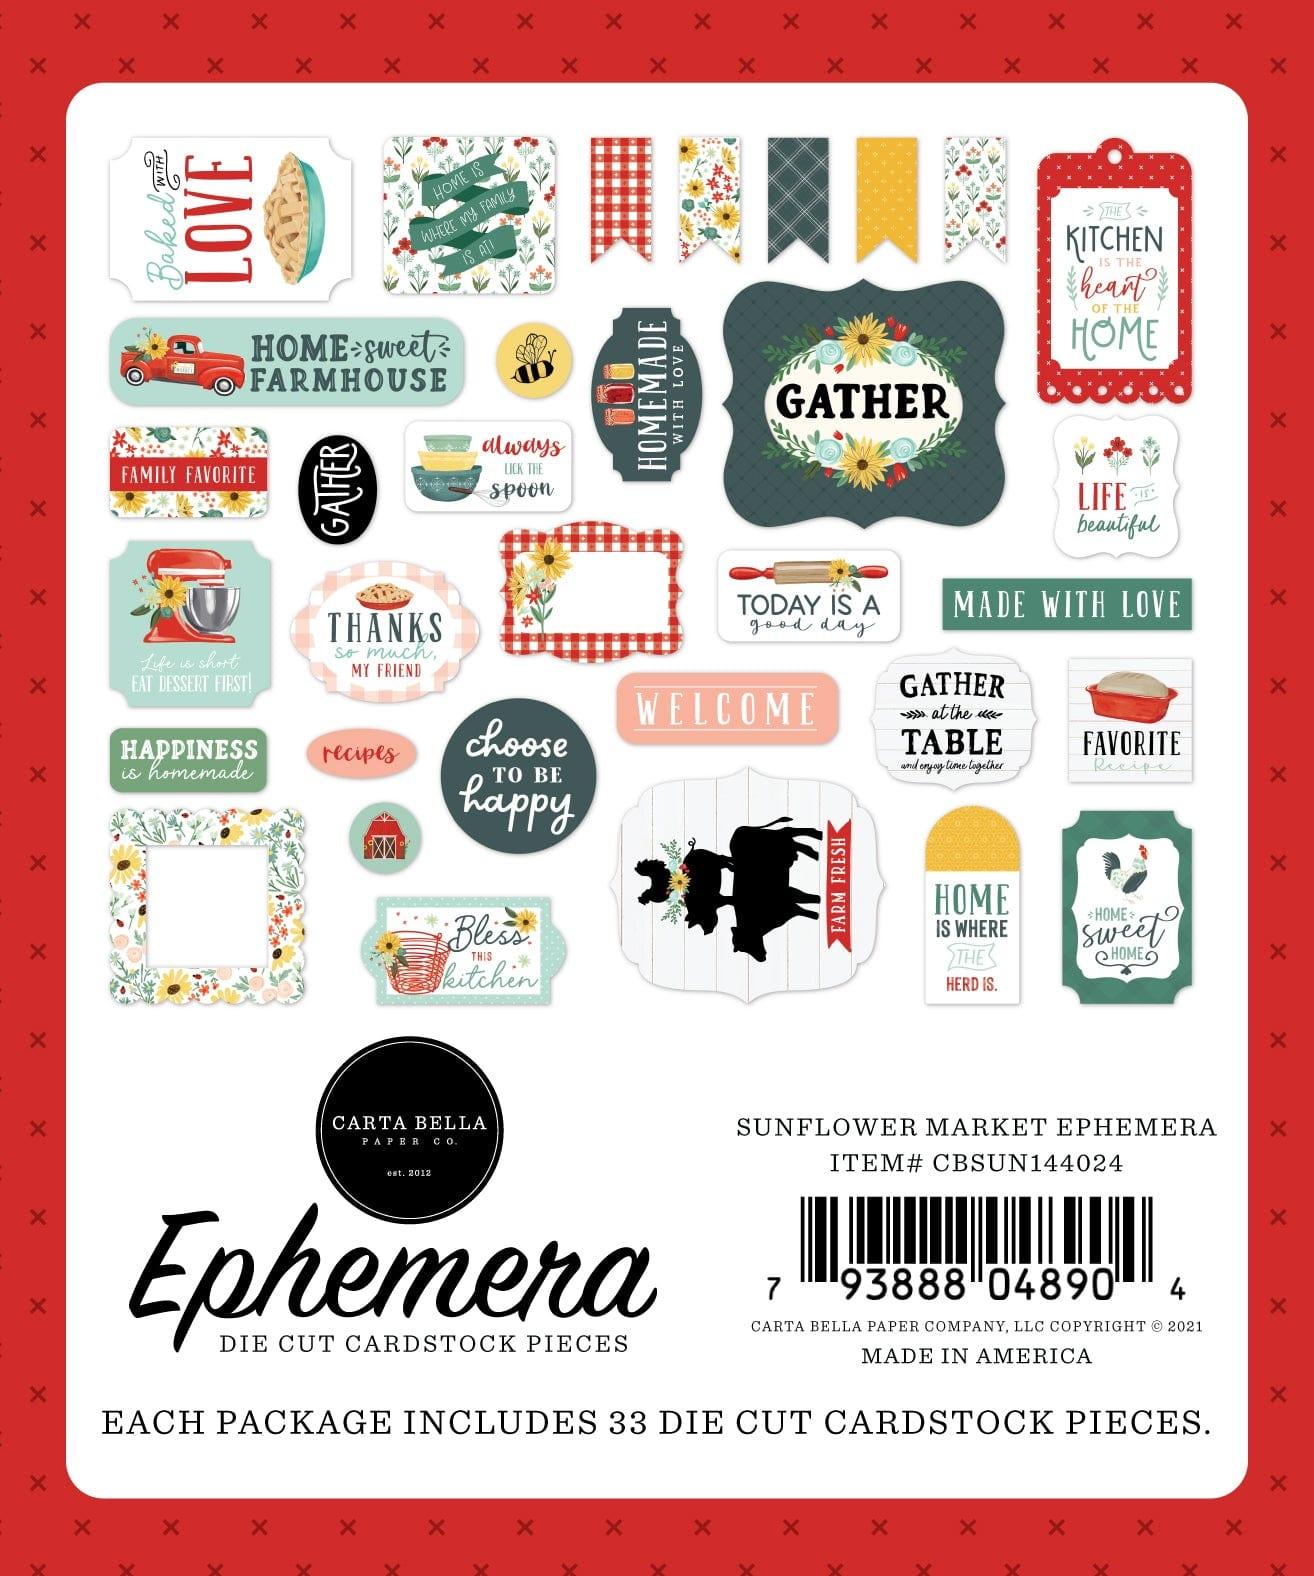 Sunflower Market Collection 5 x 5 Scrapbook Ephemera Die Cuts by Carta Bella - Scrapbook Supply Companies